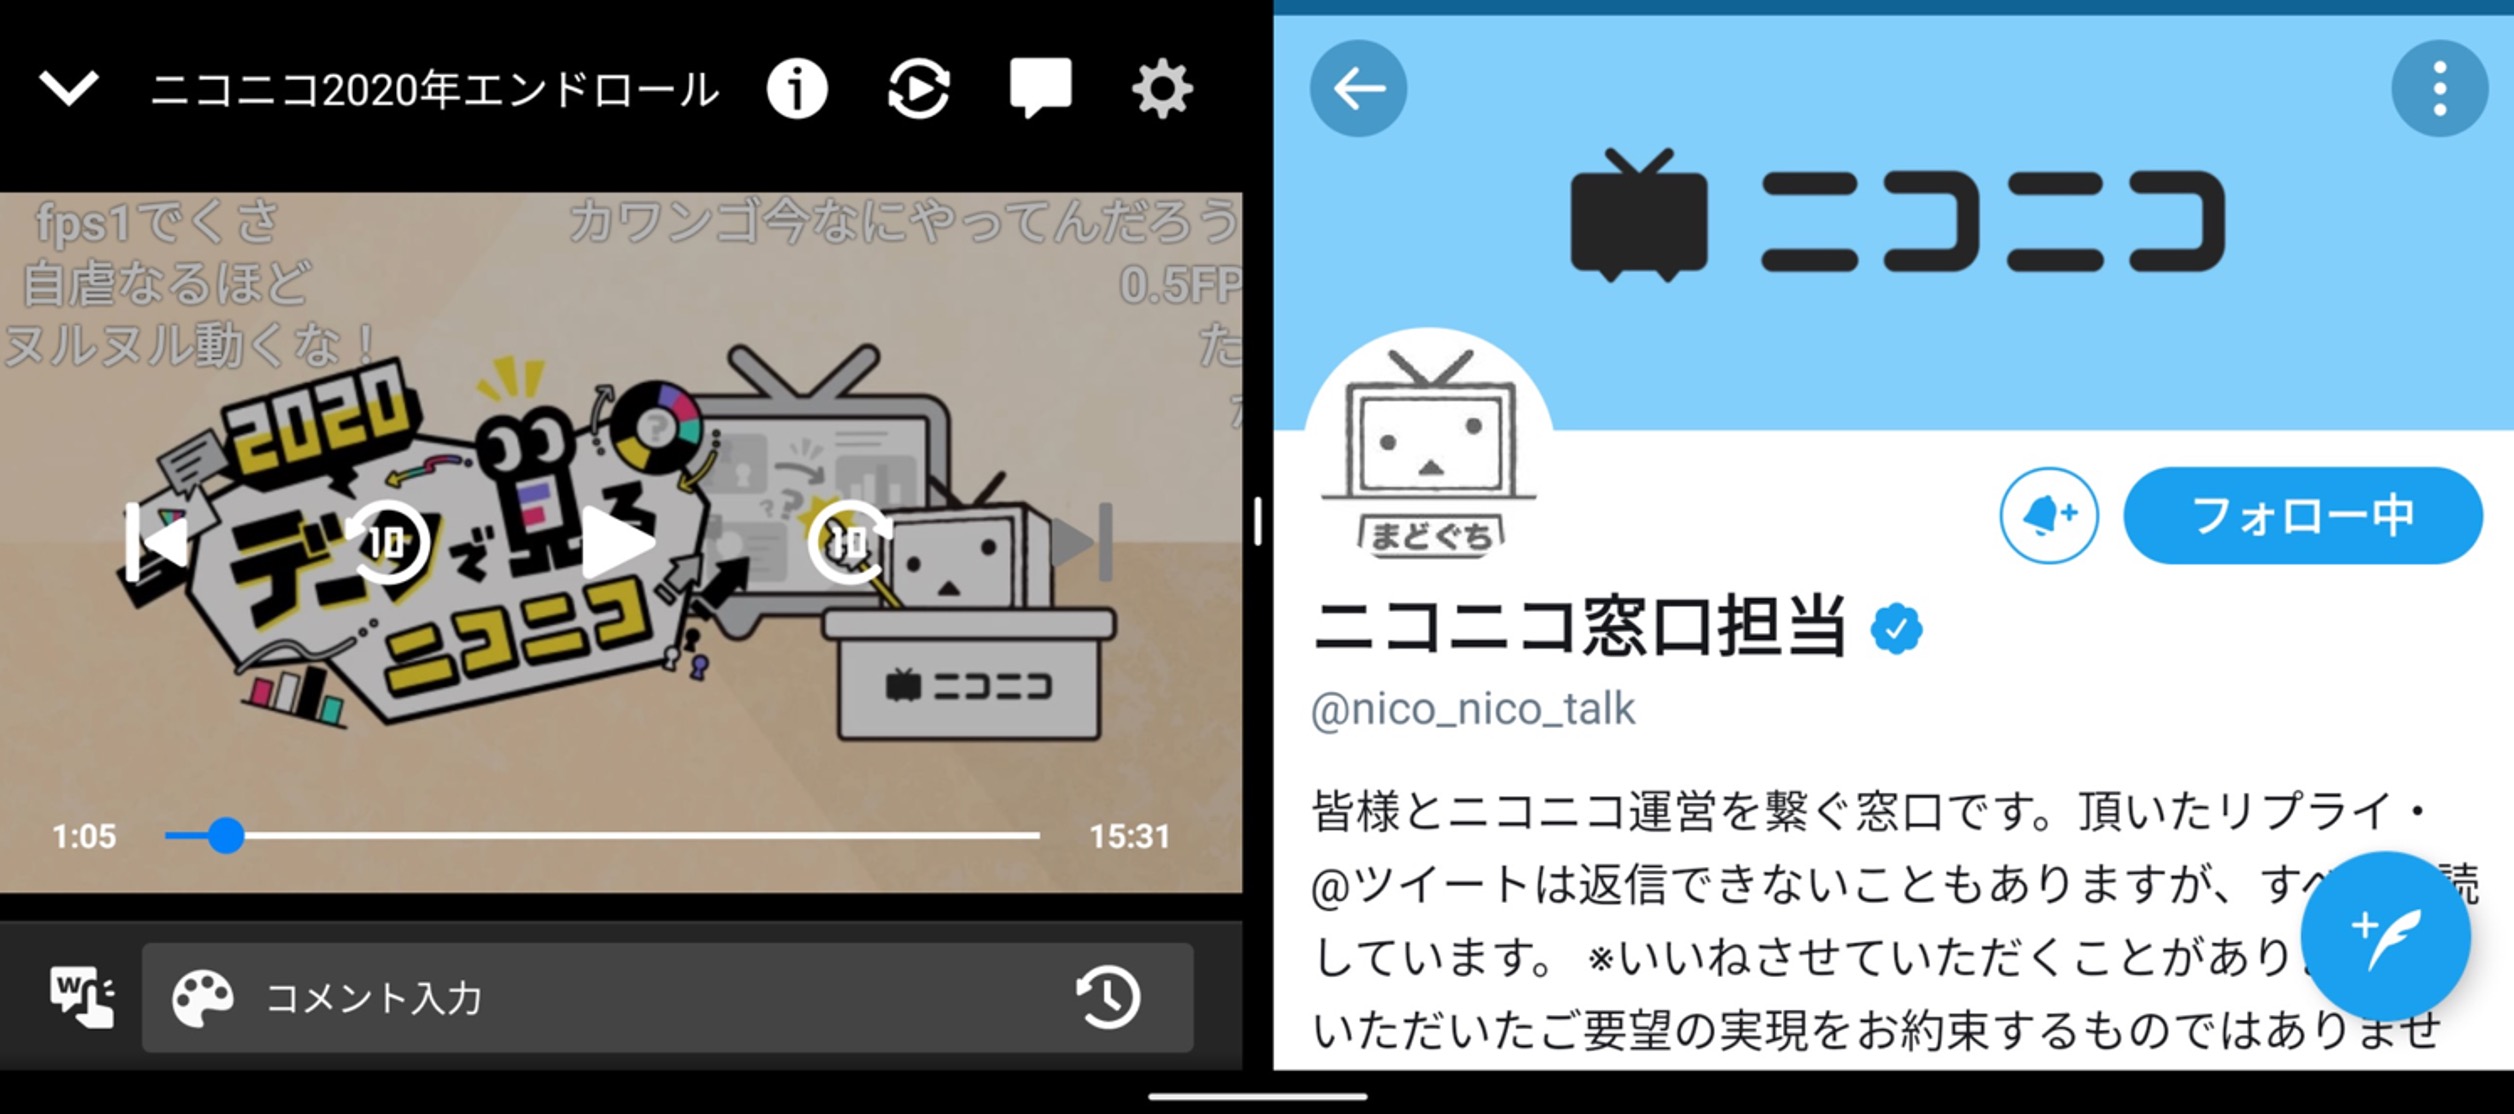 ほかのアプリと同時表示できるようになりました Android版ニコニコ動画アプリ ニコニコインフォ